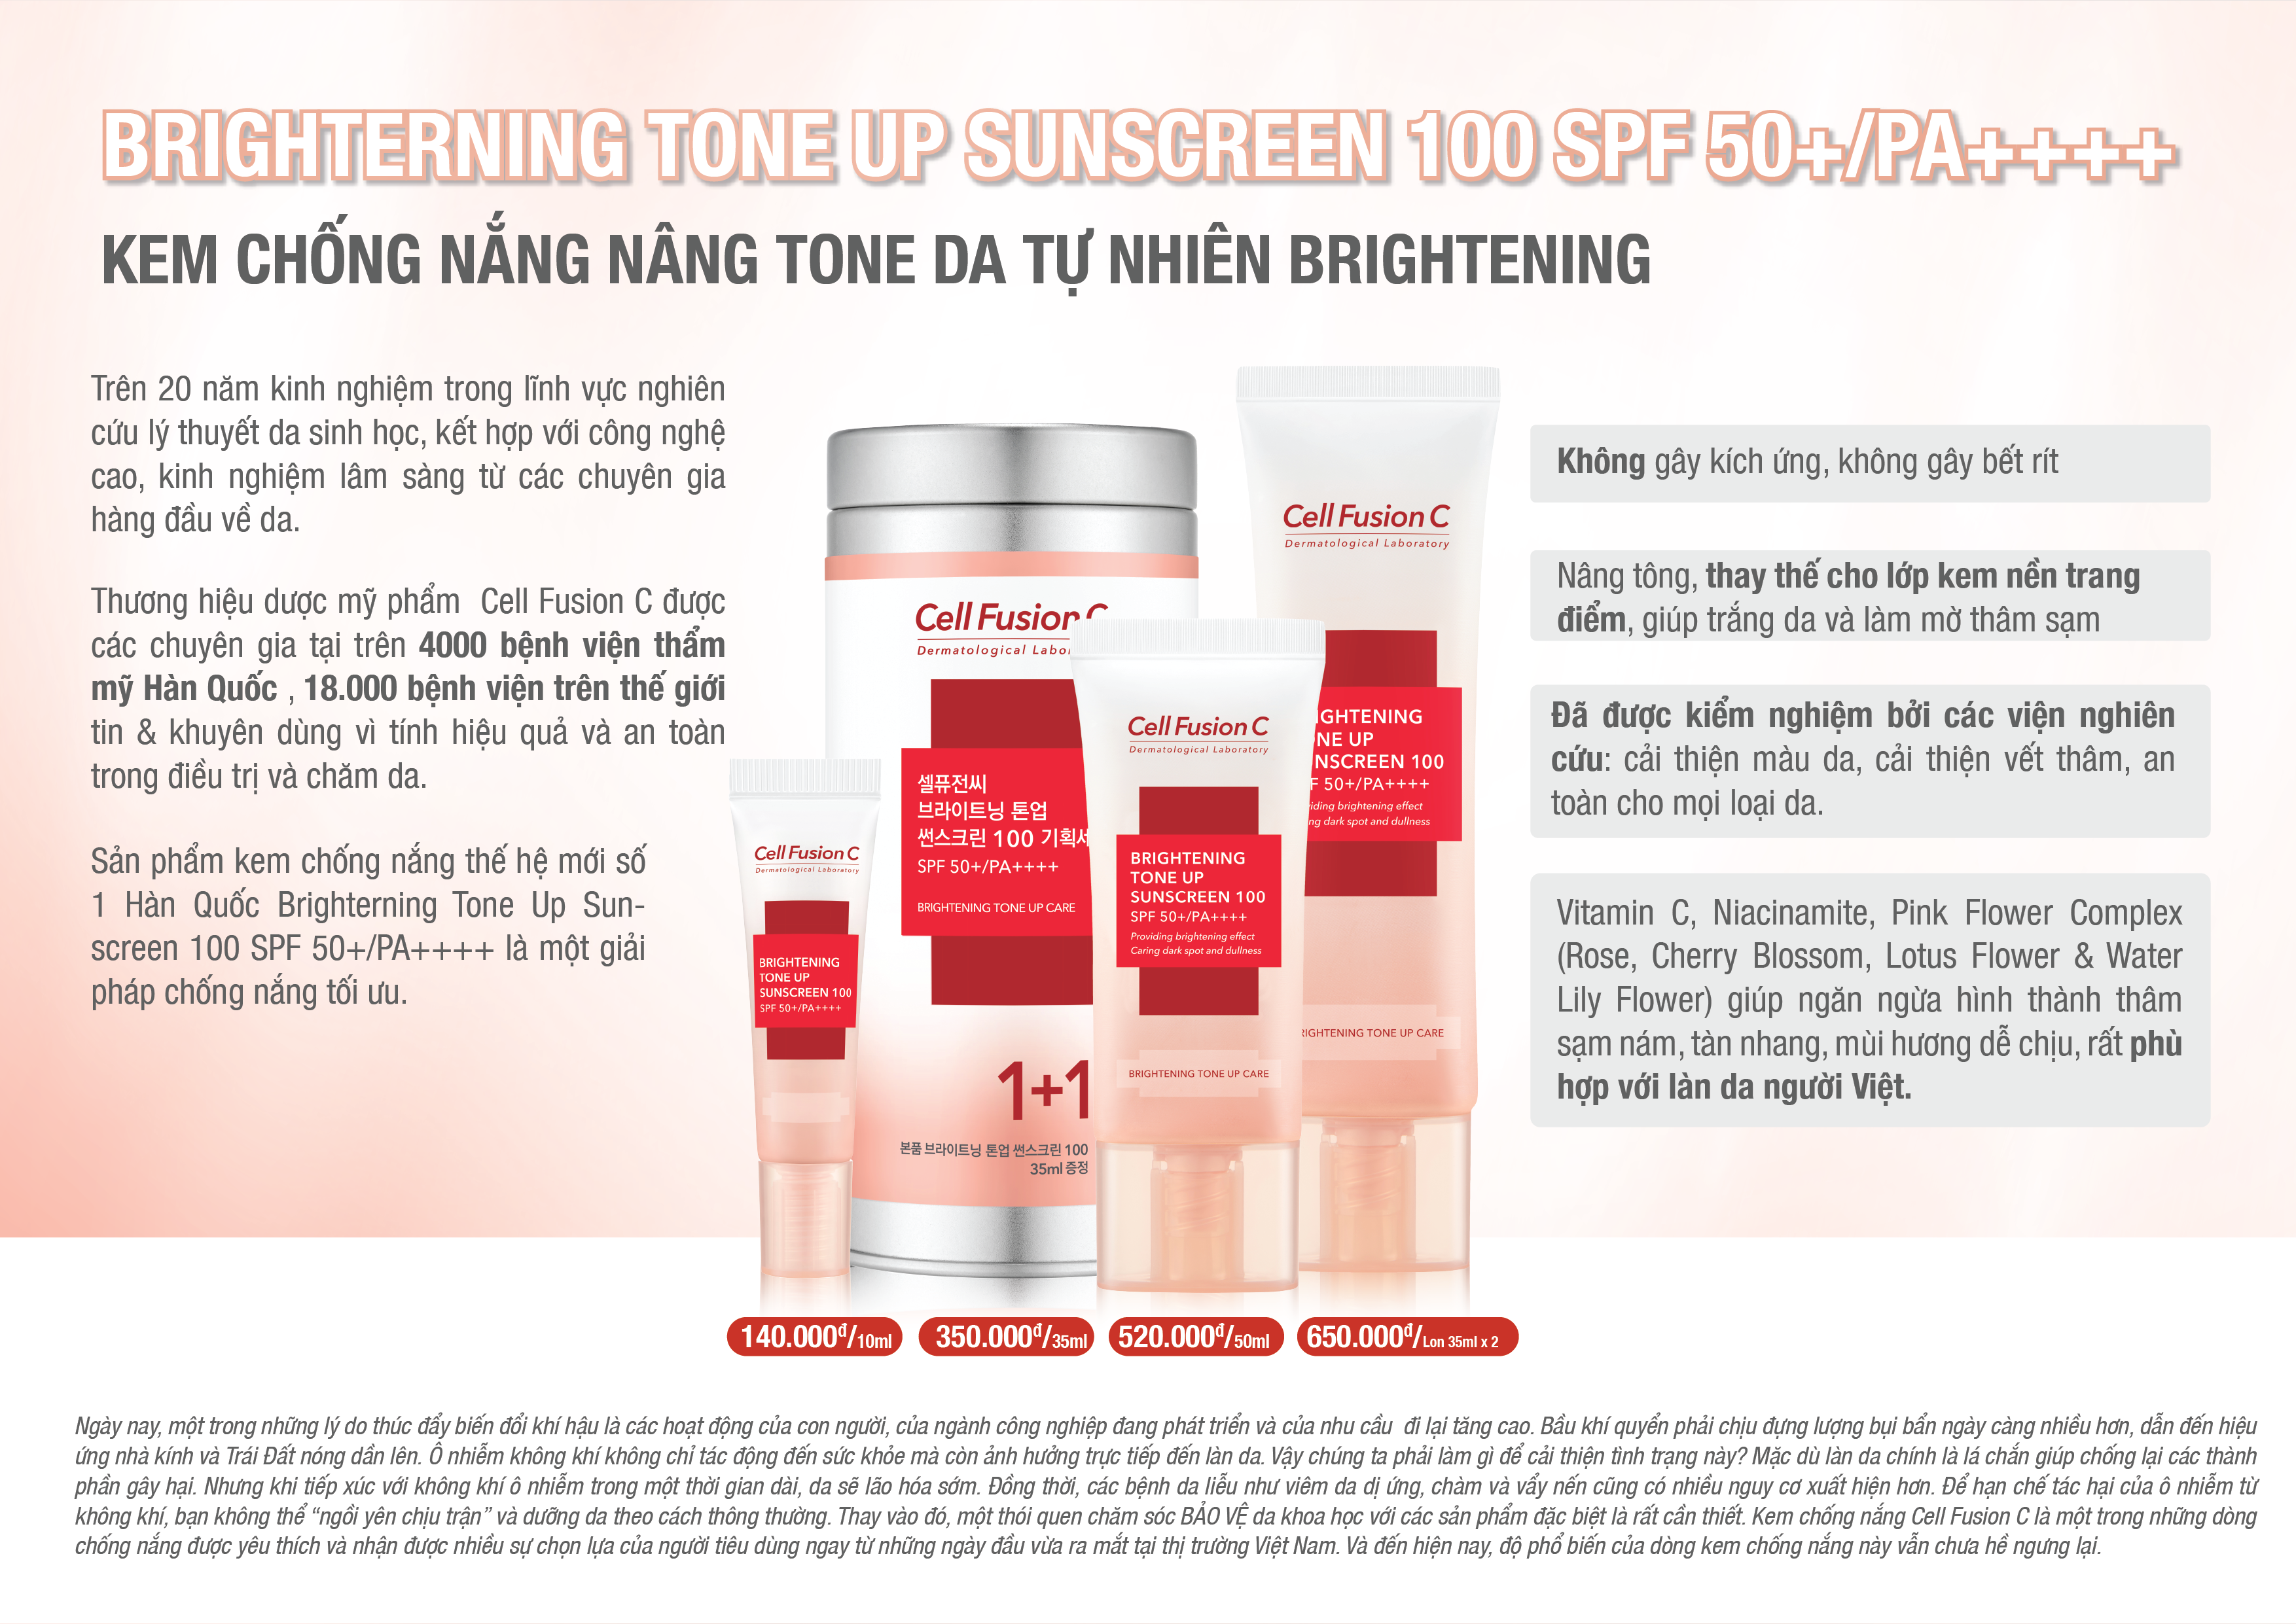 Kem Chống Nắng Dưỡng Trắng Nâng Tone Da Cell Fusion C Brightening Tone Up Sunscreen 100 SPF50+/ PA ++++